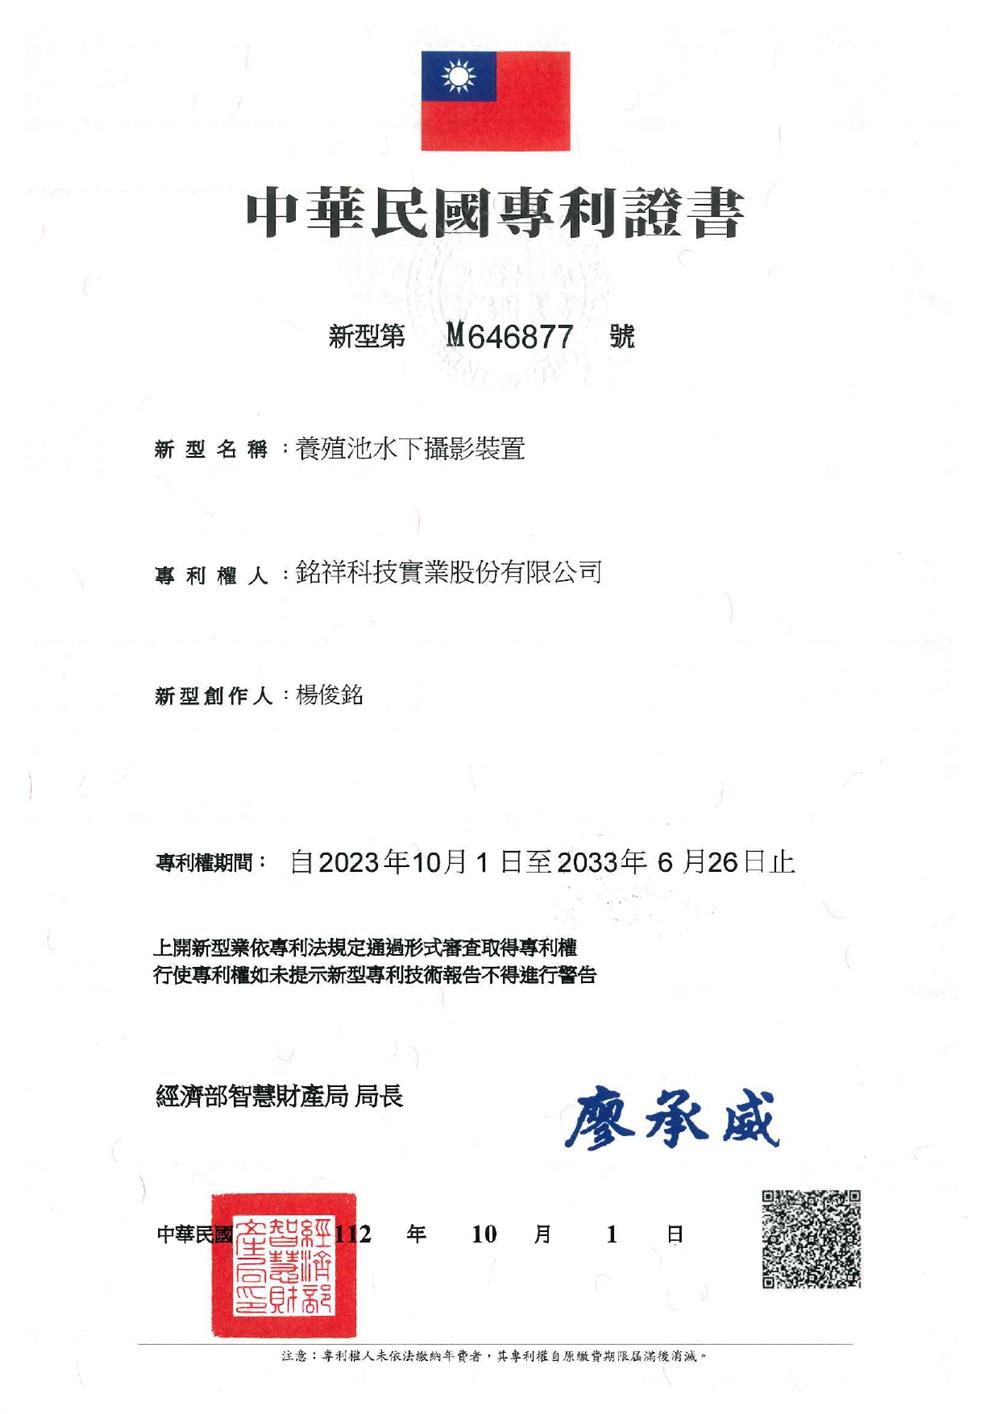 銘祥科技,JNC銘祥科技水下攝影機-中華民國專利證書